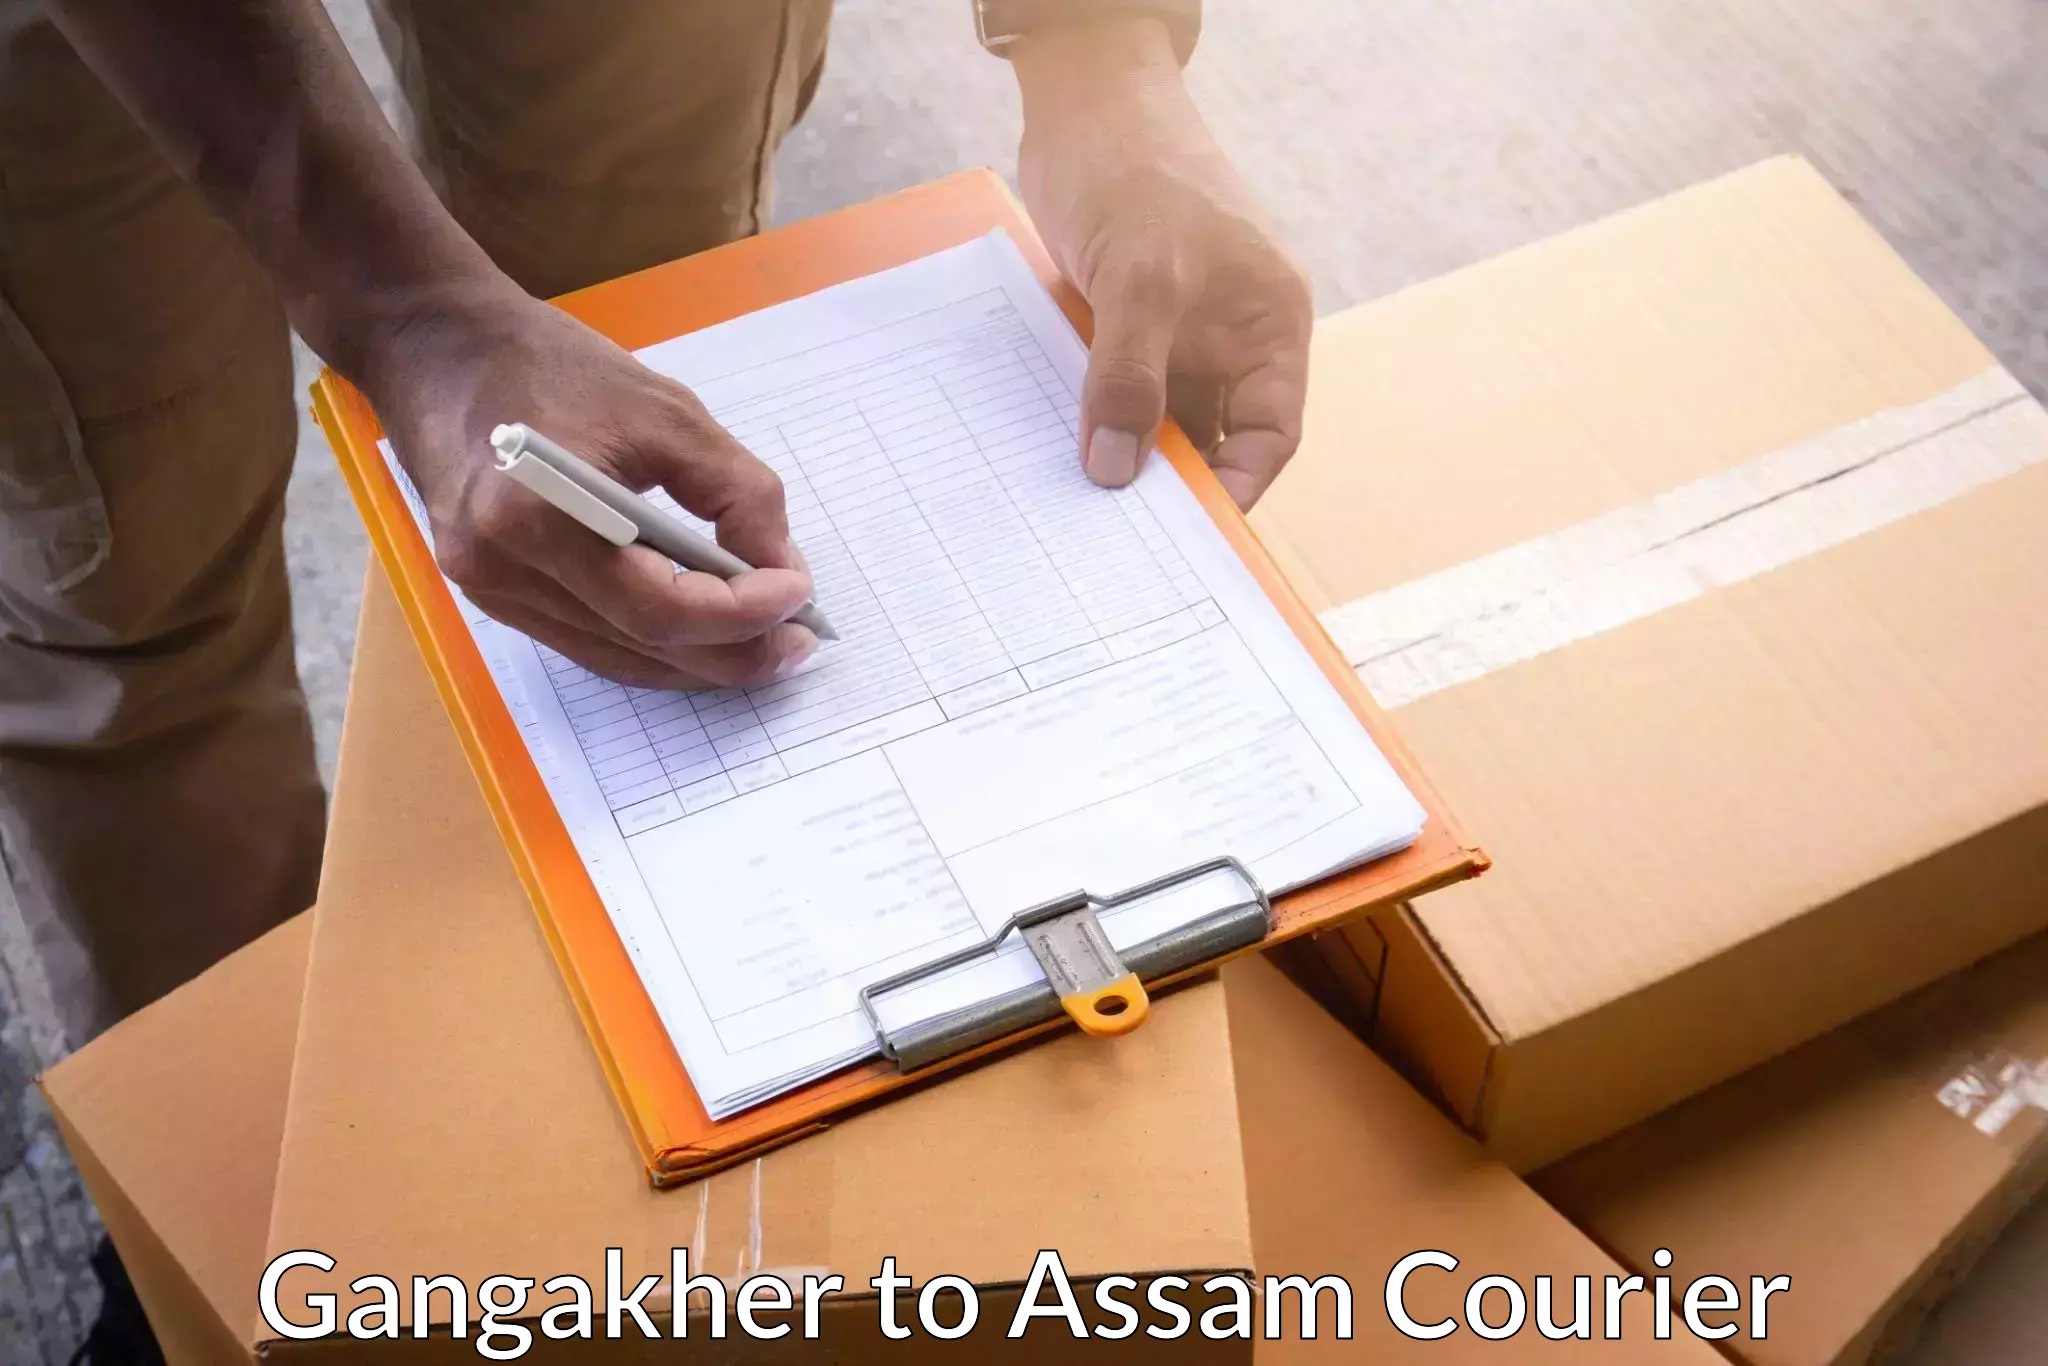 Professional courier handling Gangakher to Mangaldoi